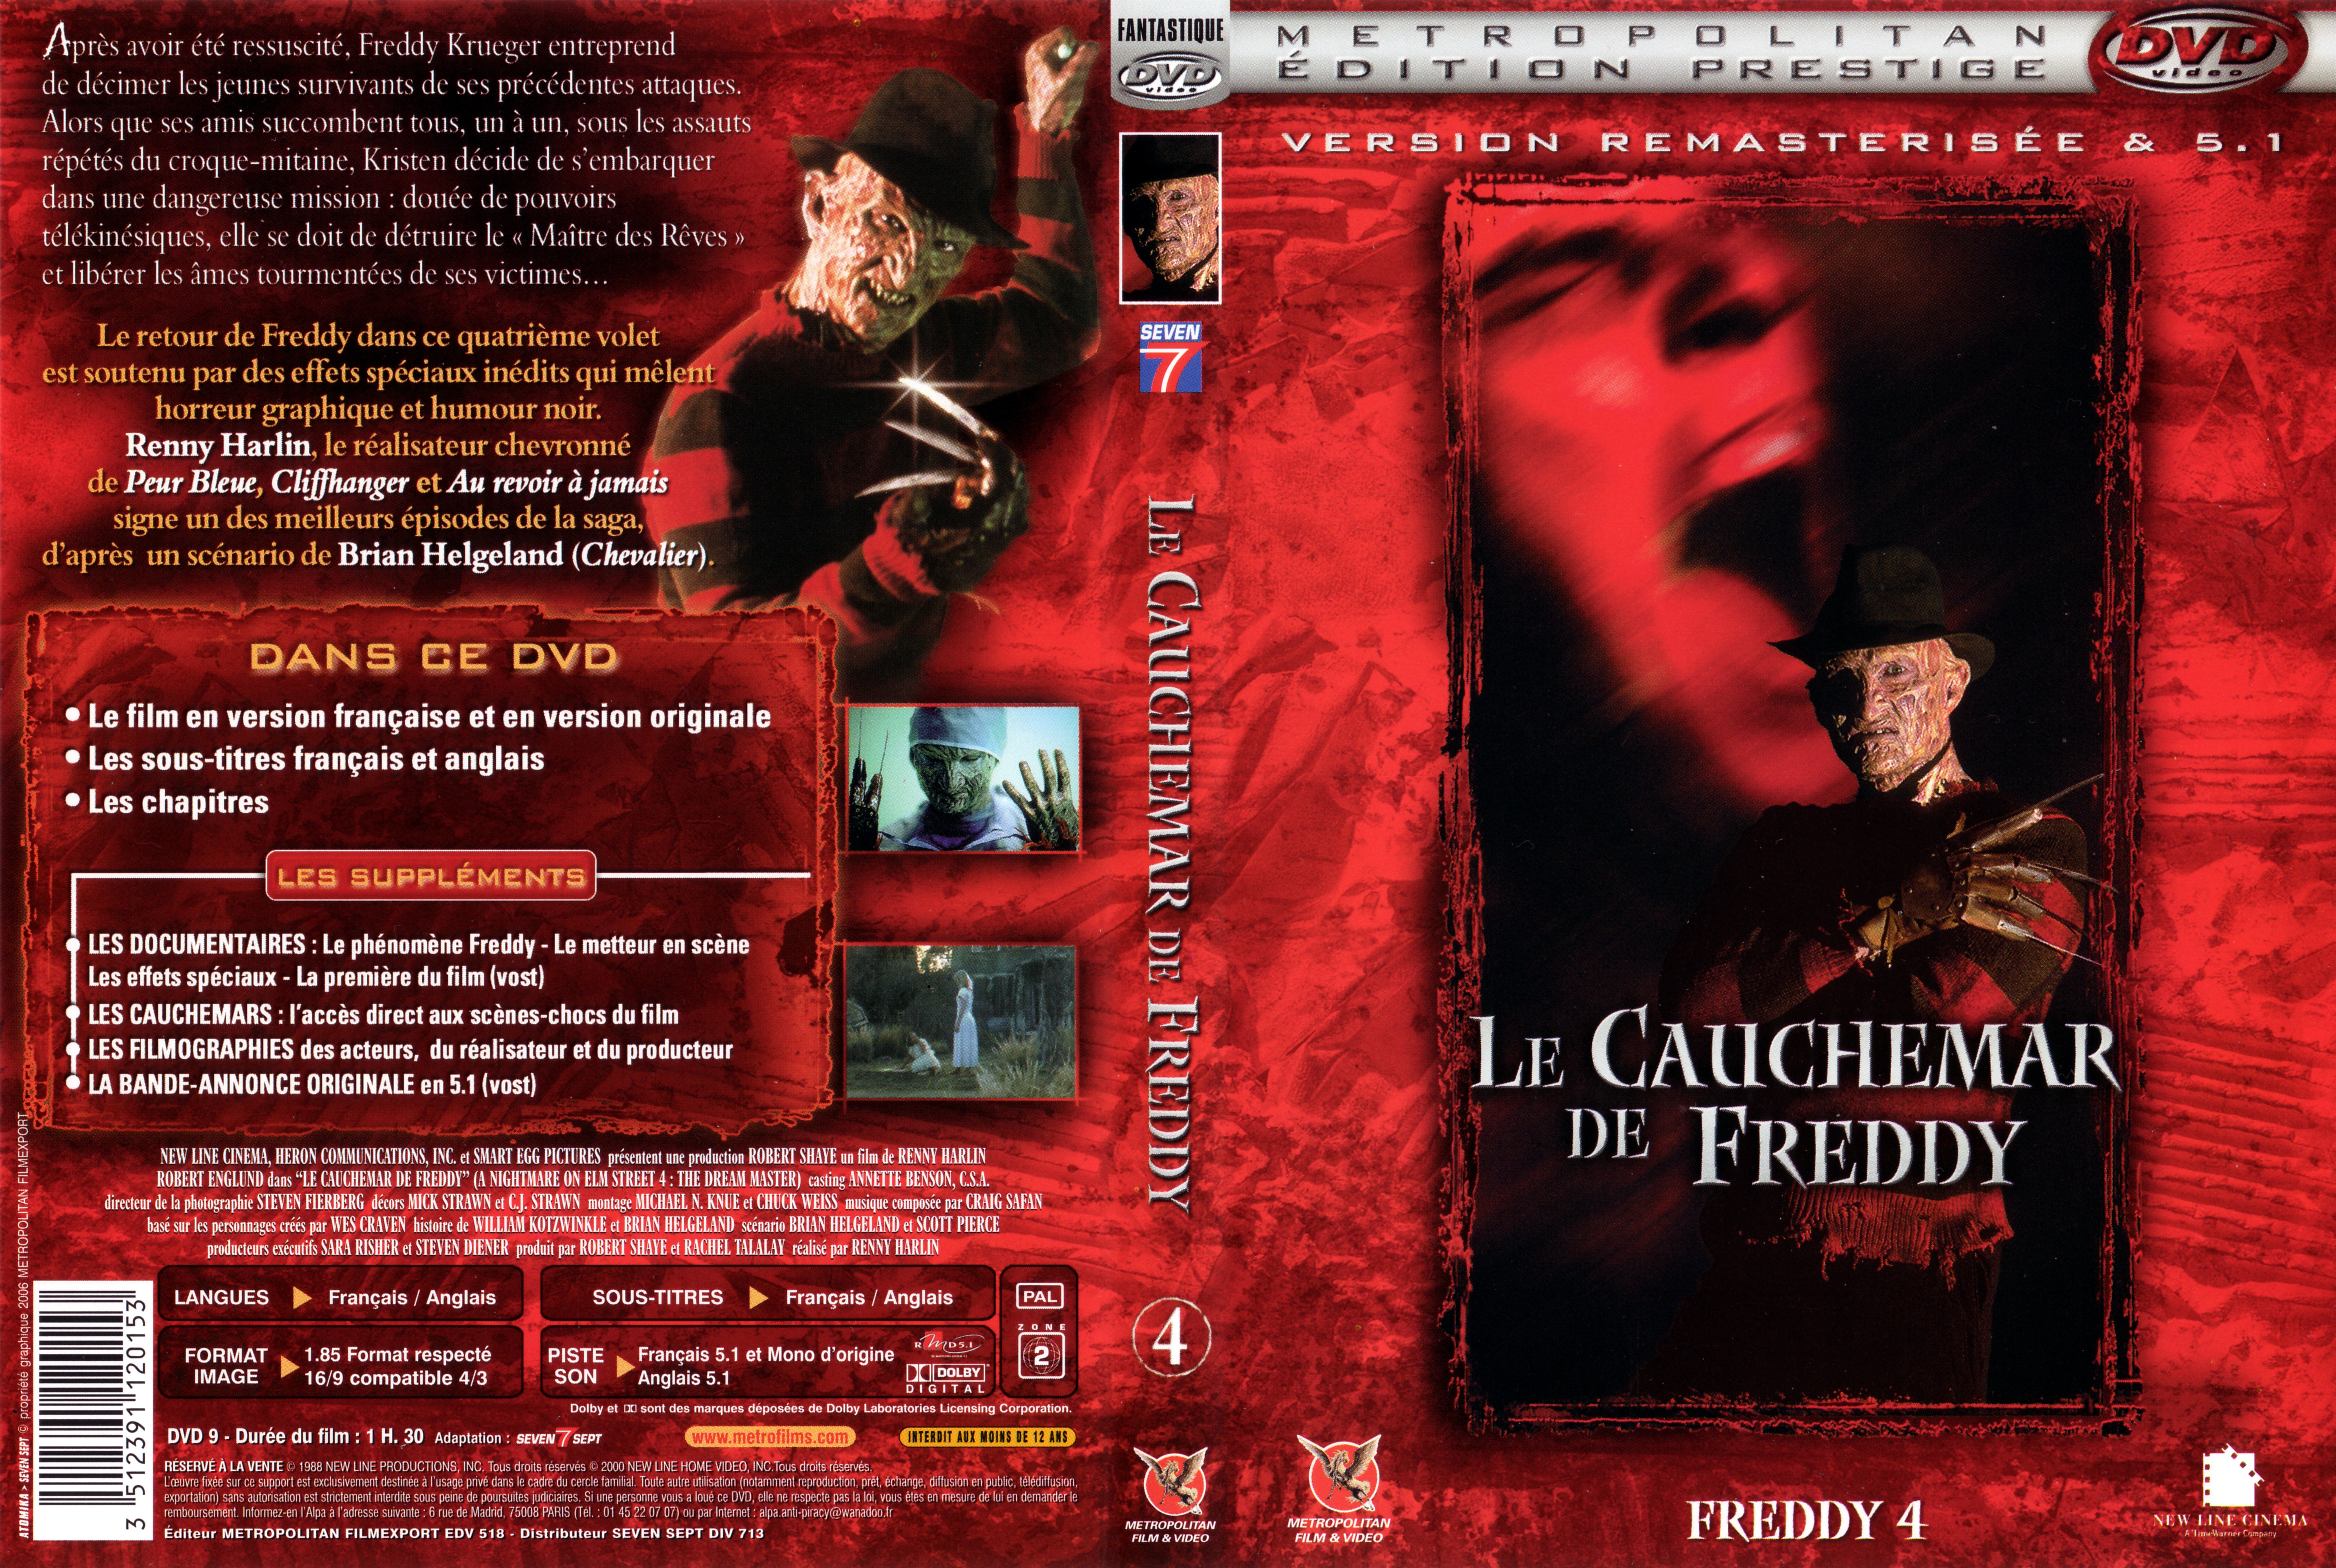 Jaquette DVD Freddy 4 Le cauchemar de Freddy v2